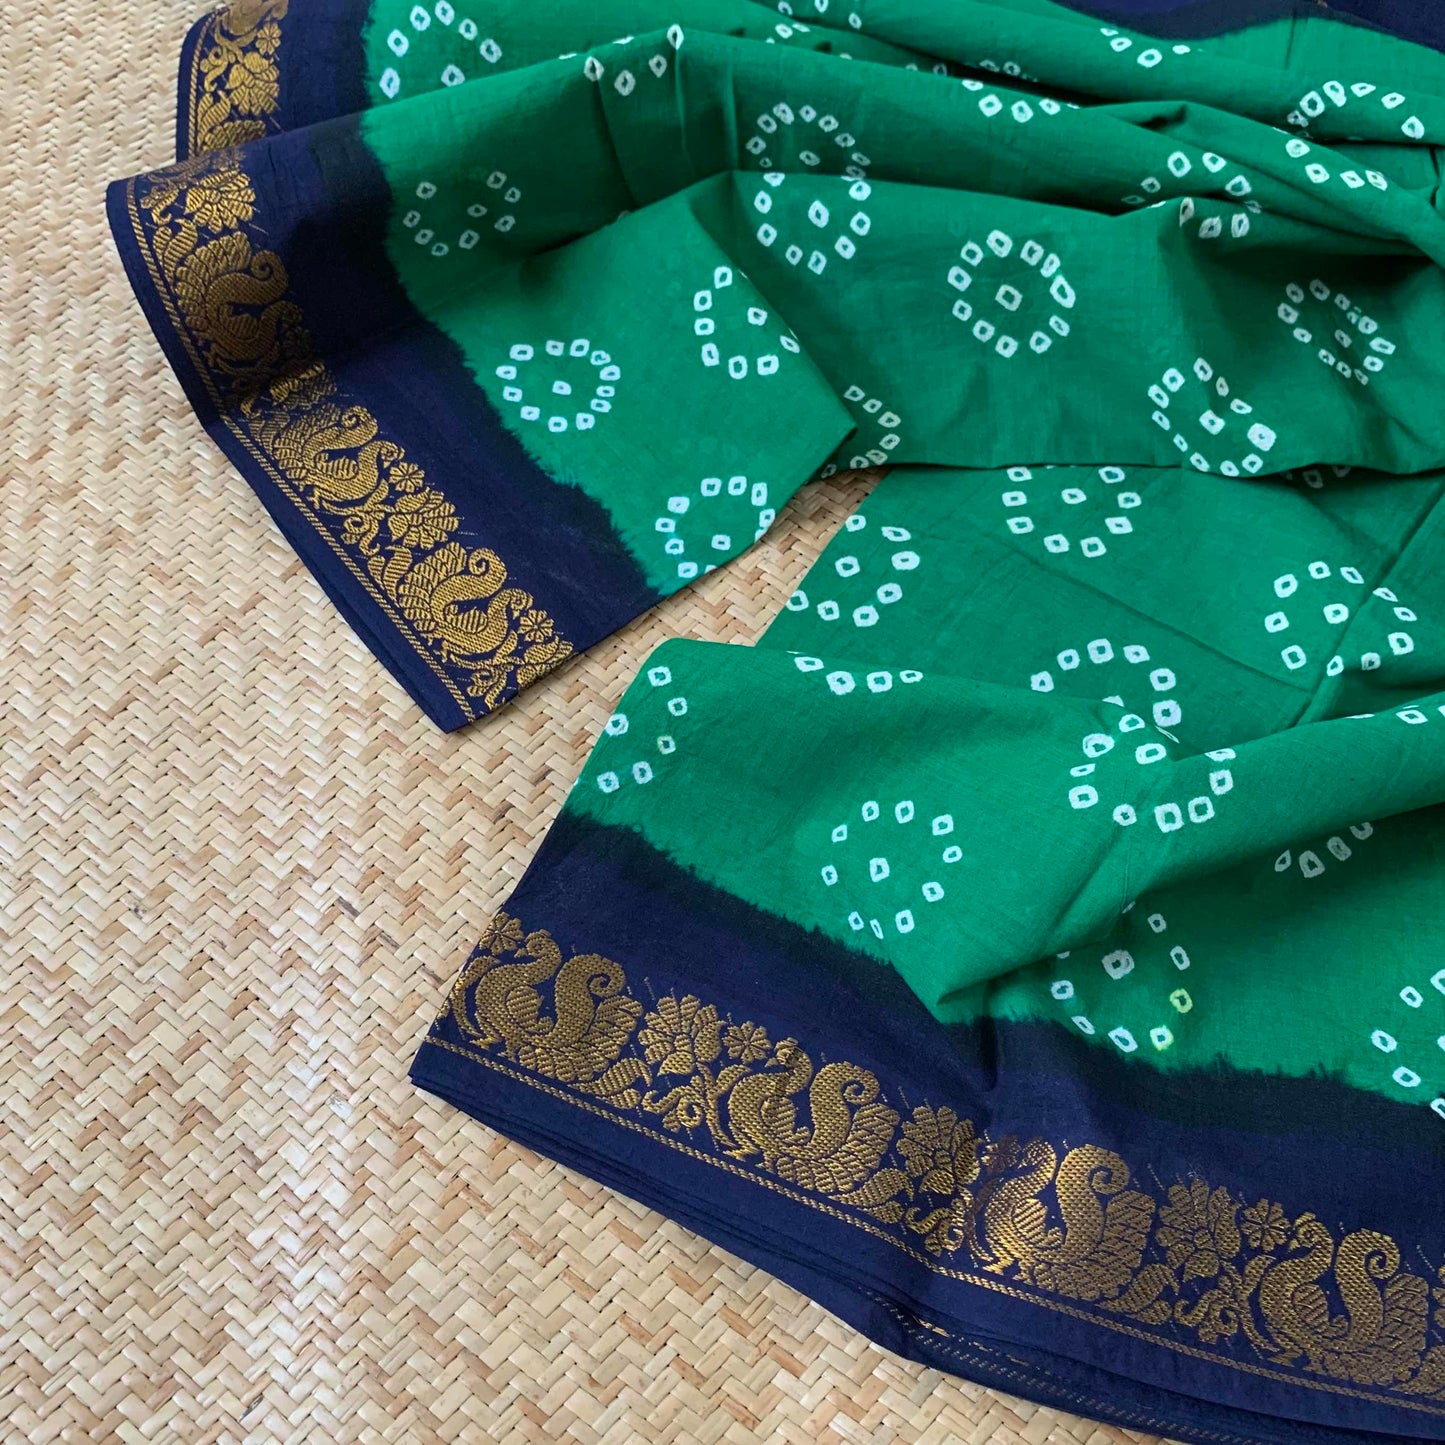 Green Saree Navy Blue Border, Hand knotted Sungadi On a annam Border Cotton saree, Kaikattu Sungadi